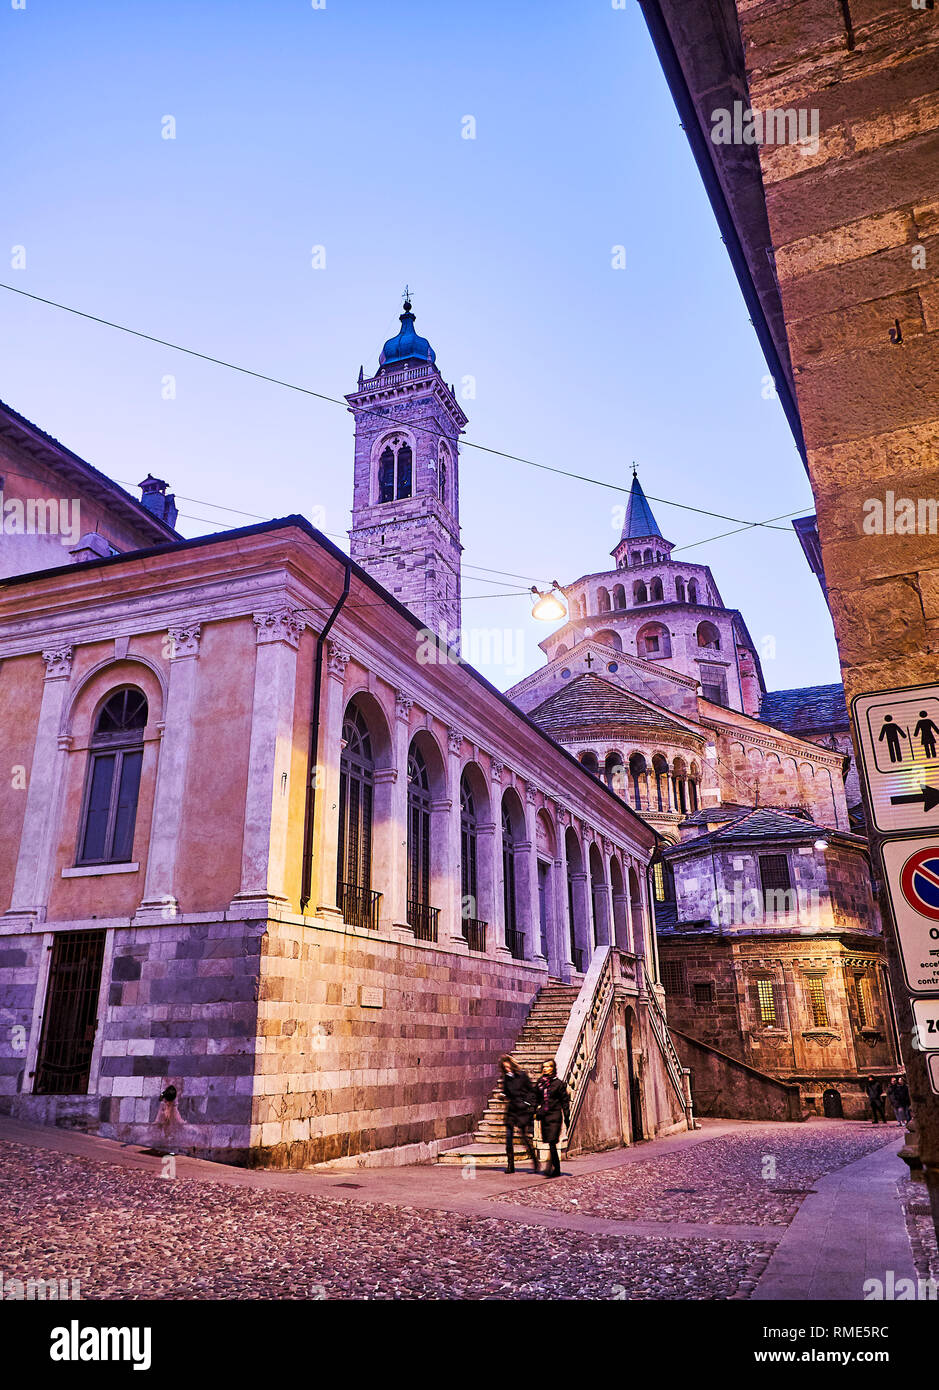 The Fontanone Visconteo and The Basilica di Santa Maria Maggiore at nightfall. Piazza del Duomo. Citta Alta, Bergamo, Lombardy, Italy. Stock Photo